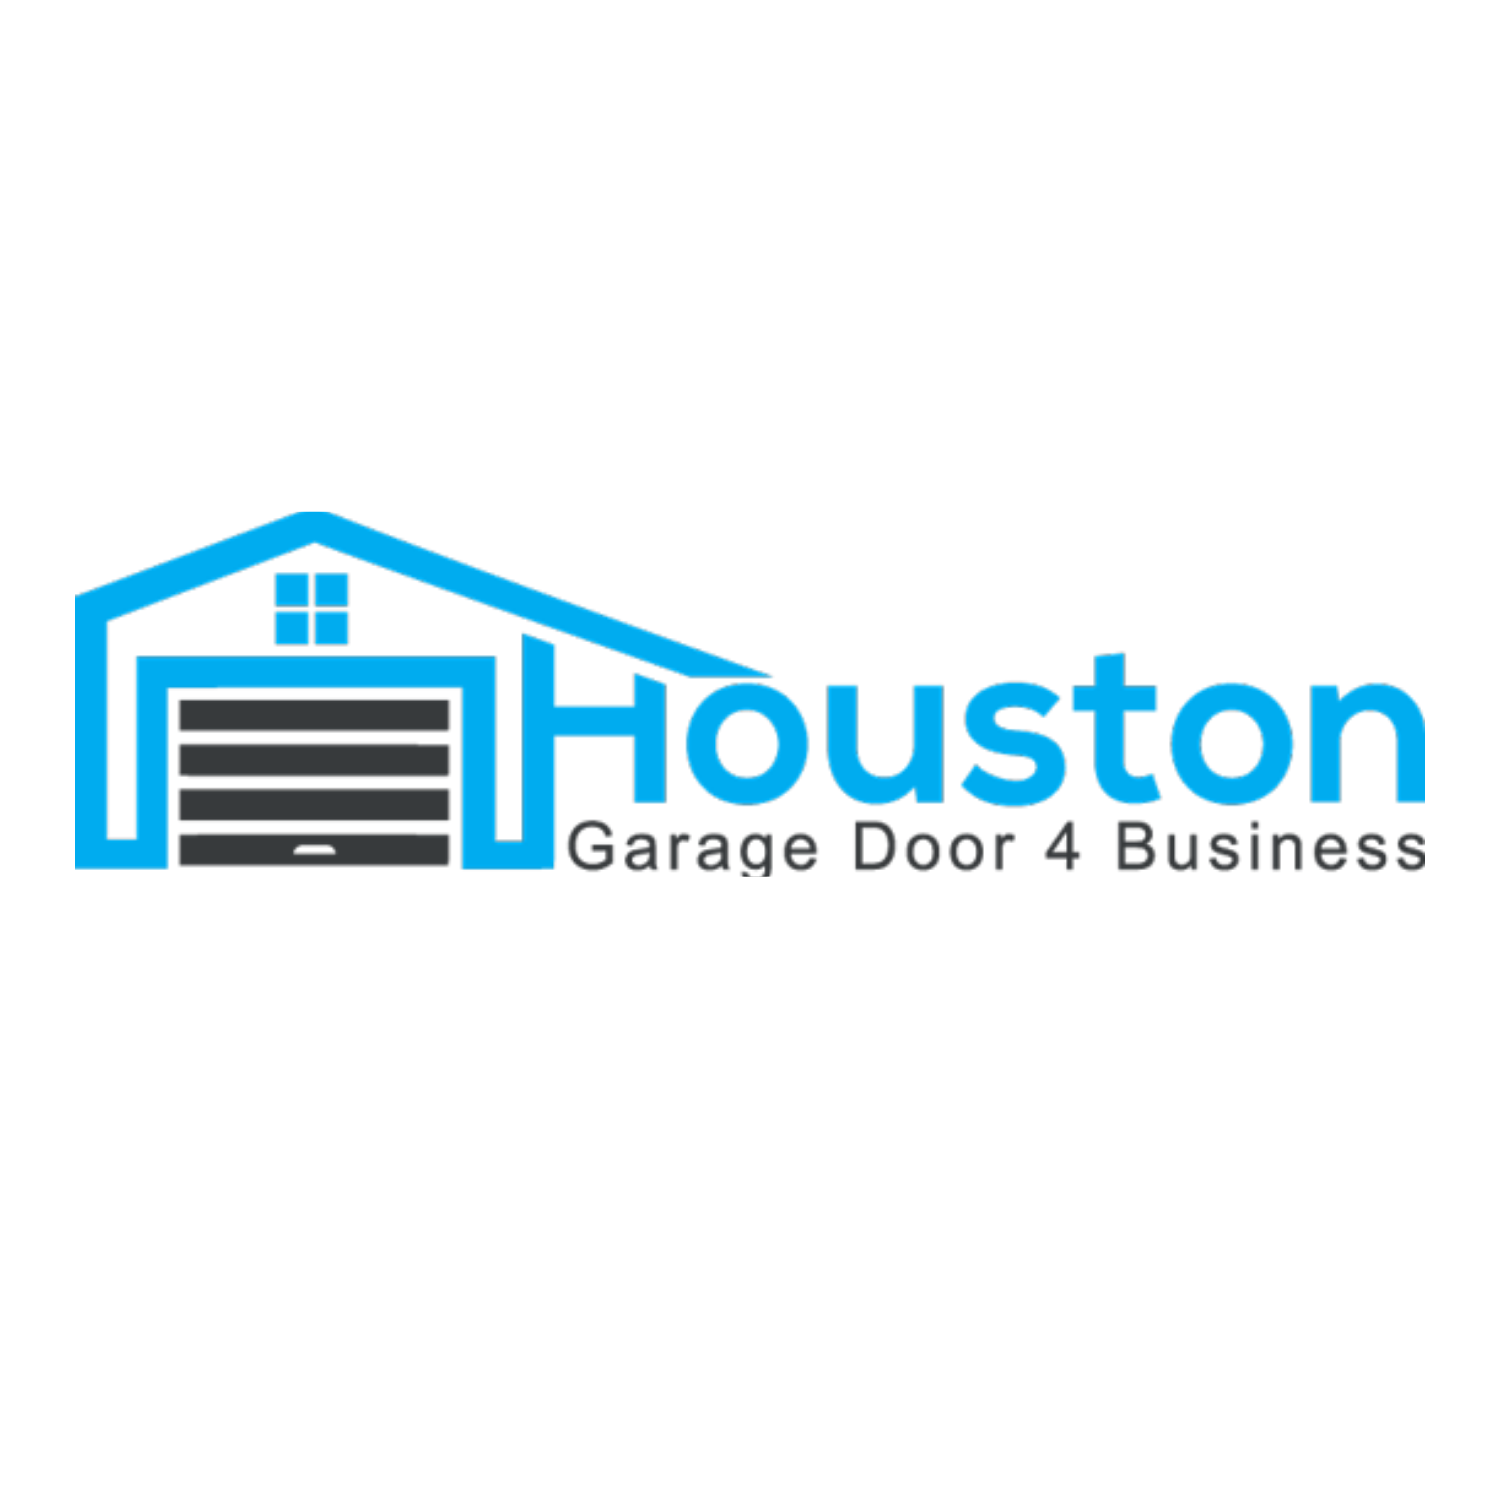 Houston Garage Door 4 Business's Logo